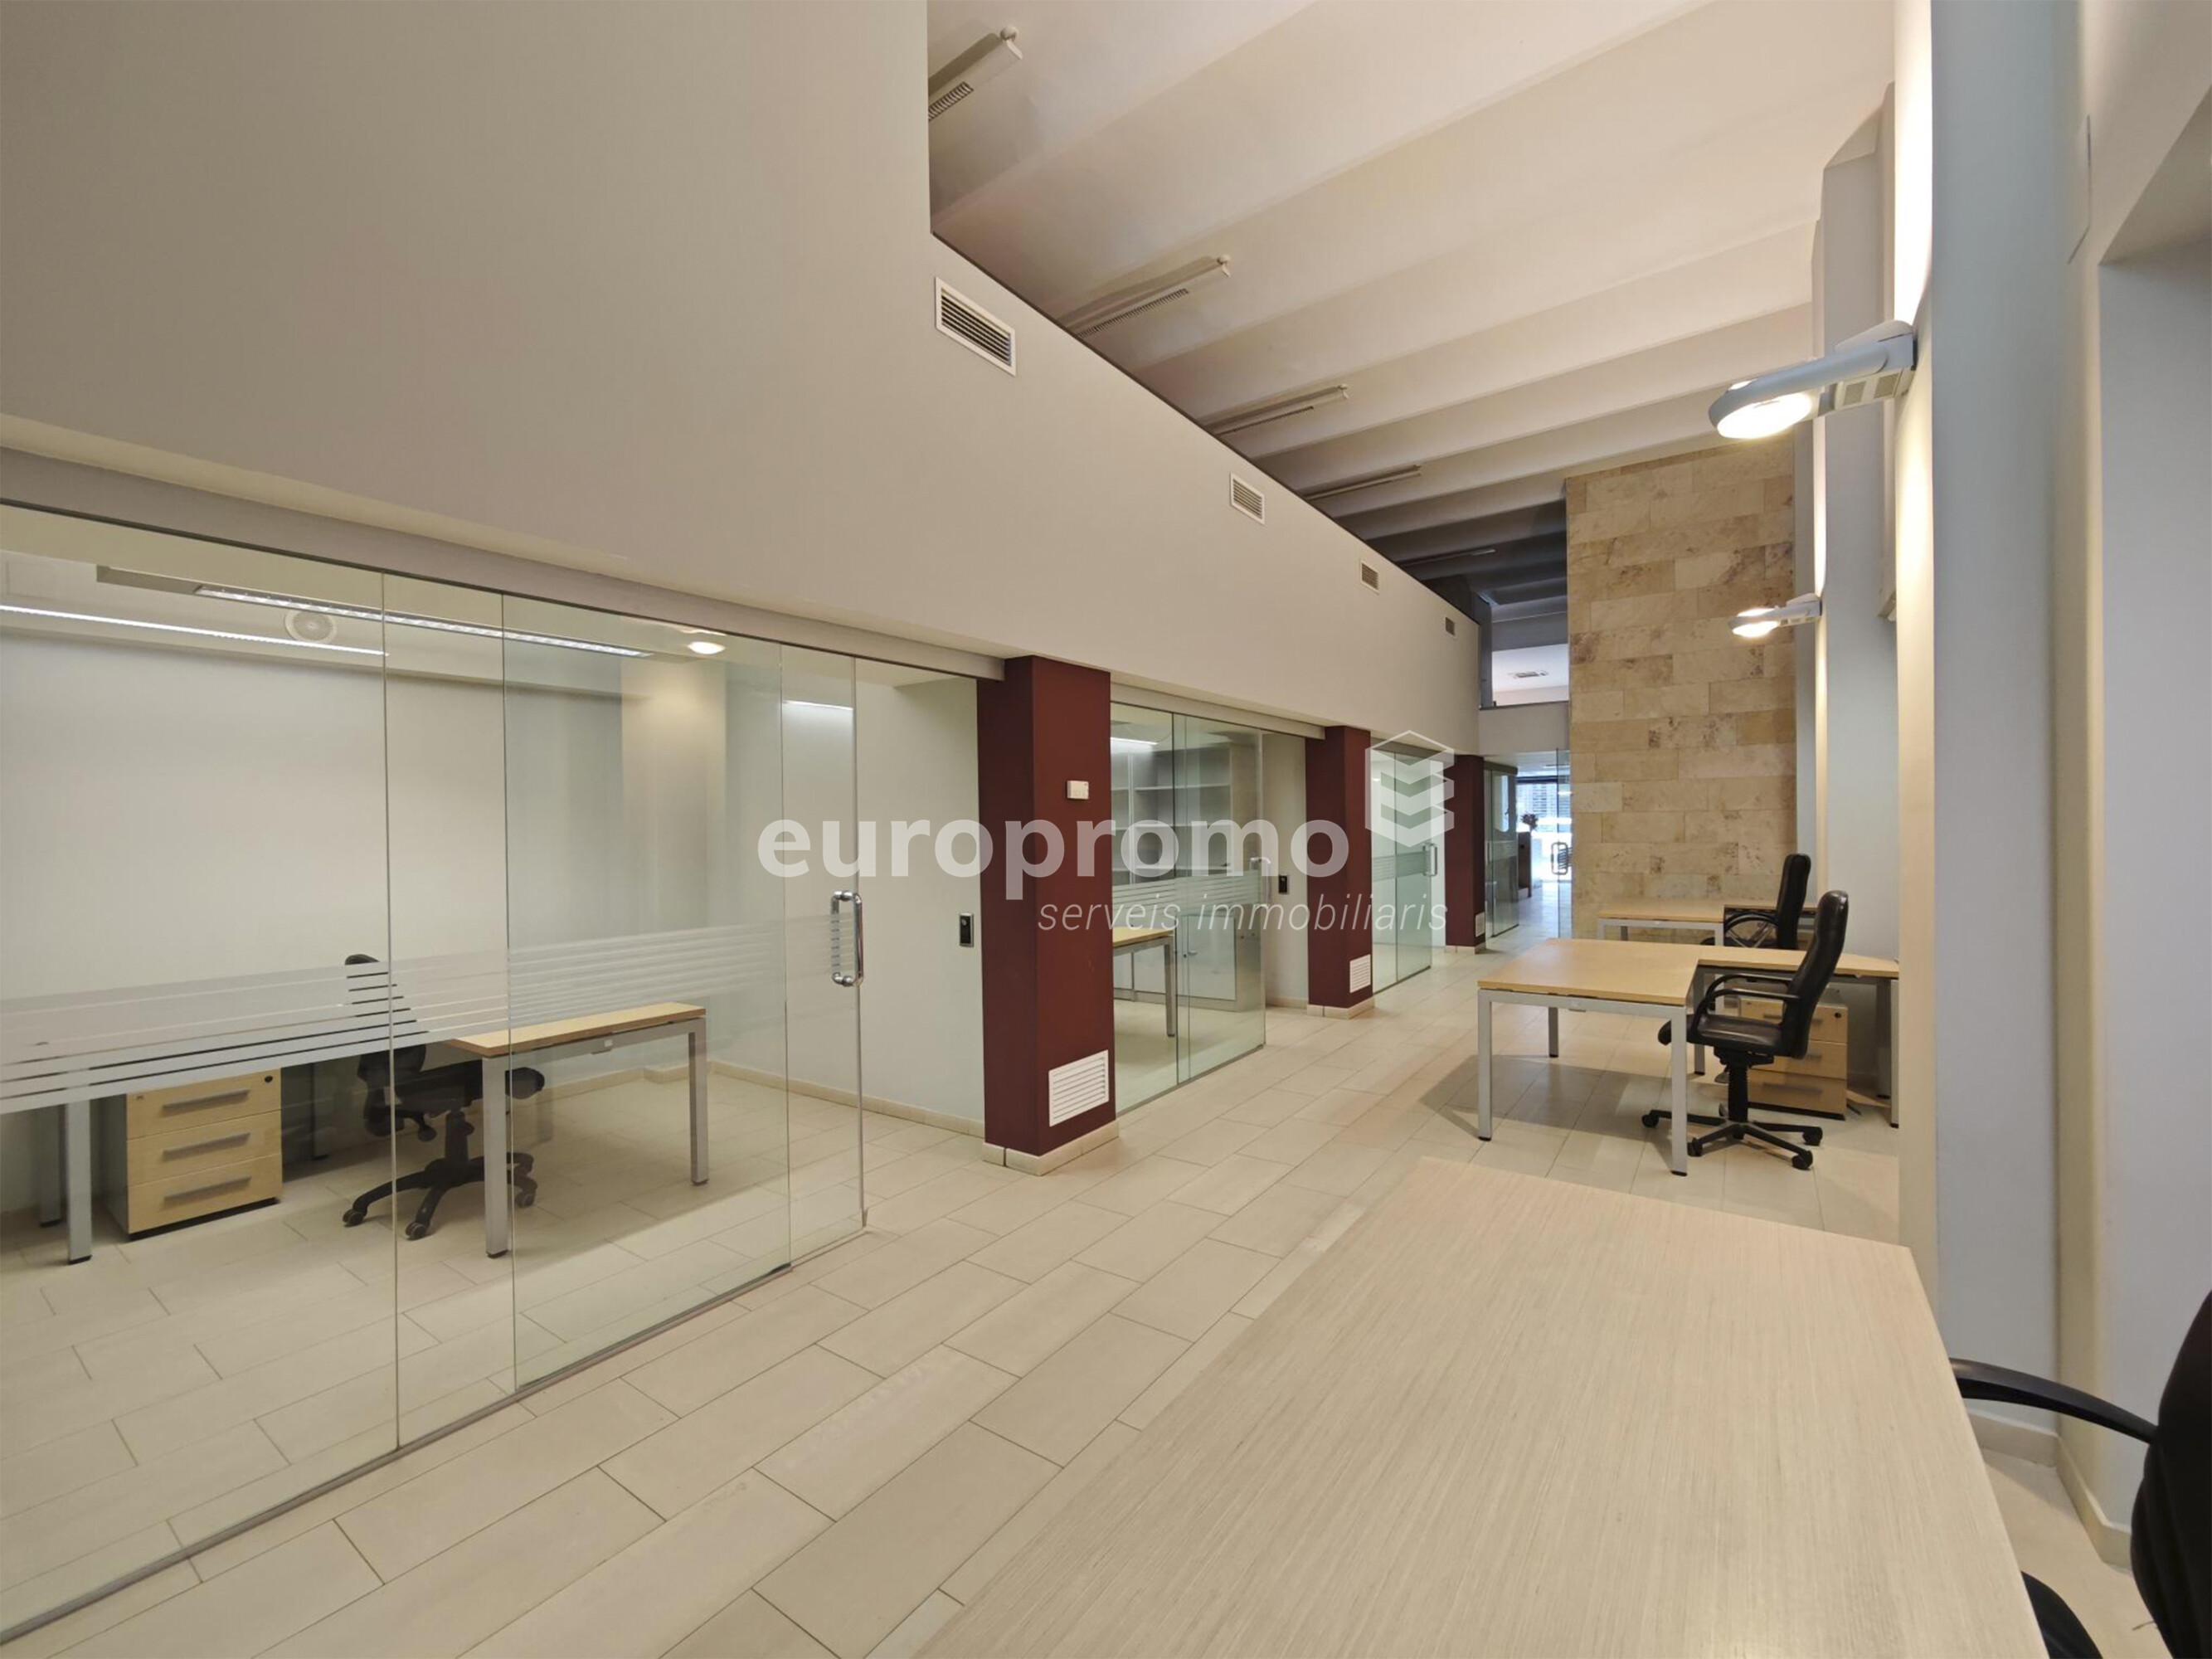 Oficina de 400m2 distribuida en dos plantas y situada en el centro de Girona!